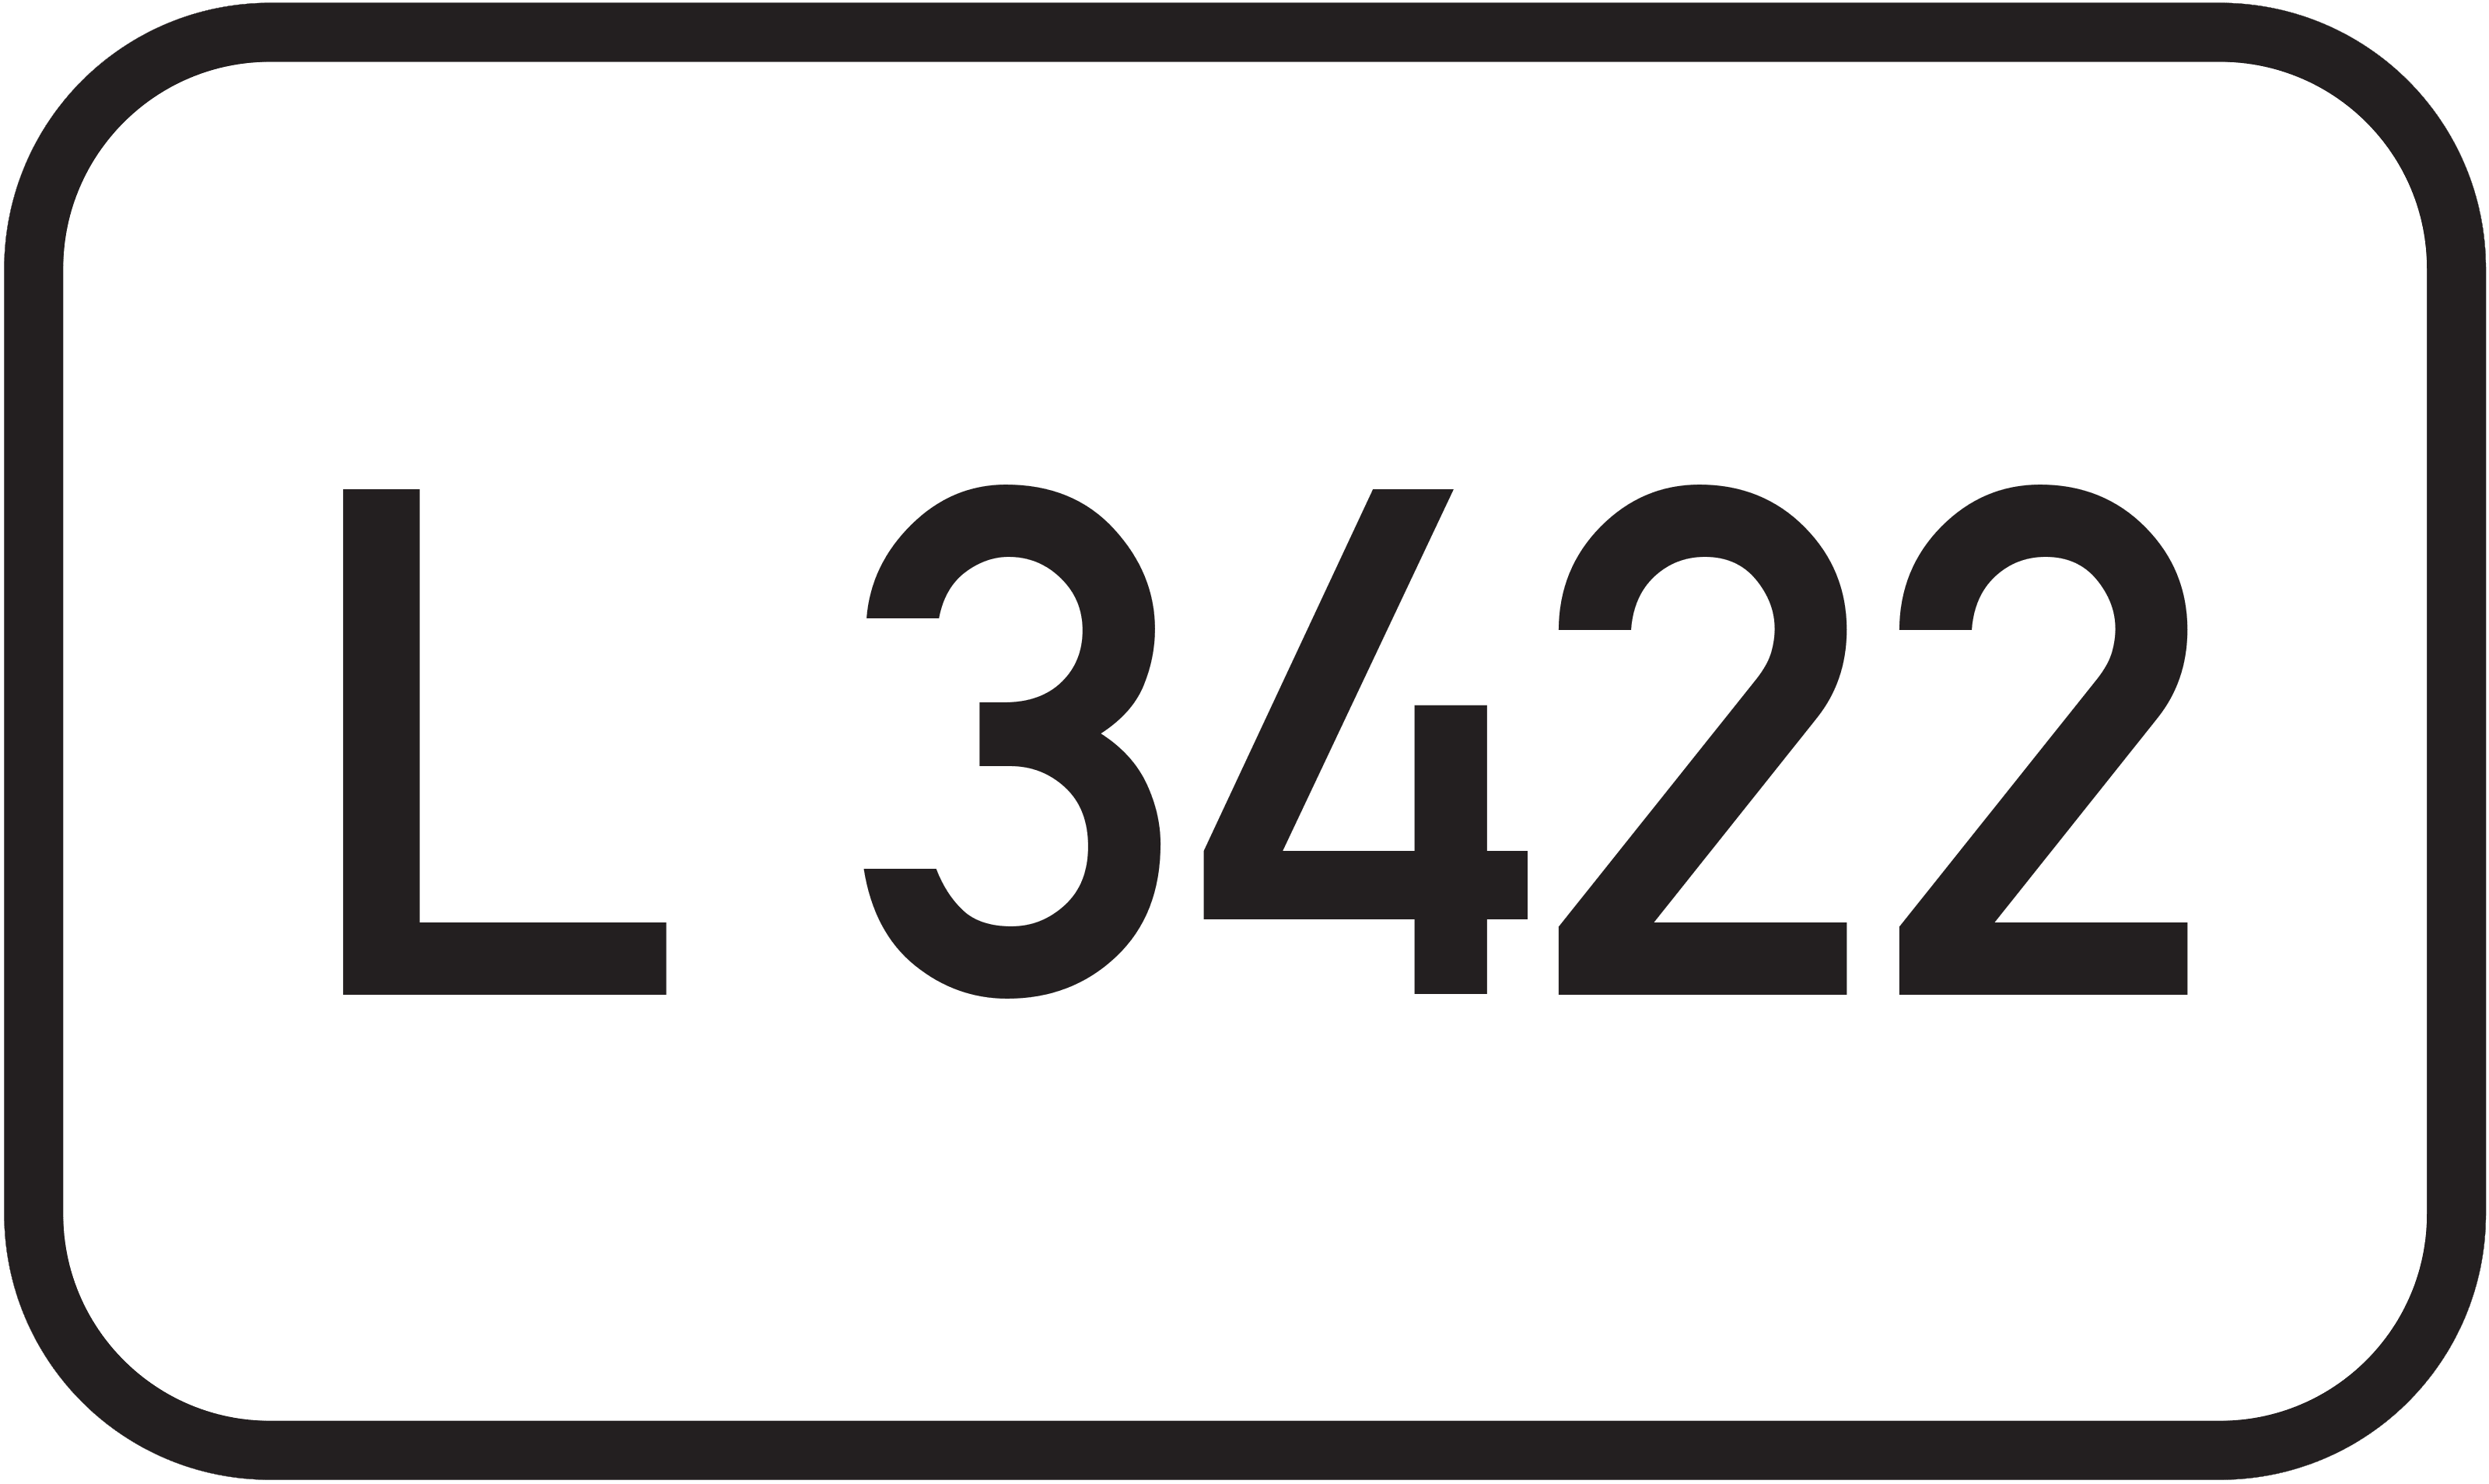 Landesstraße L 3422